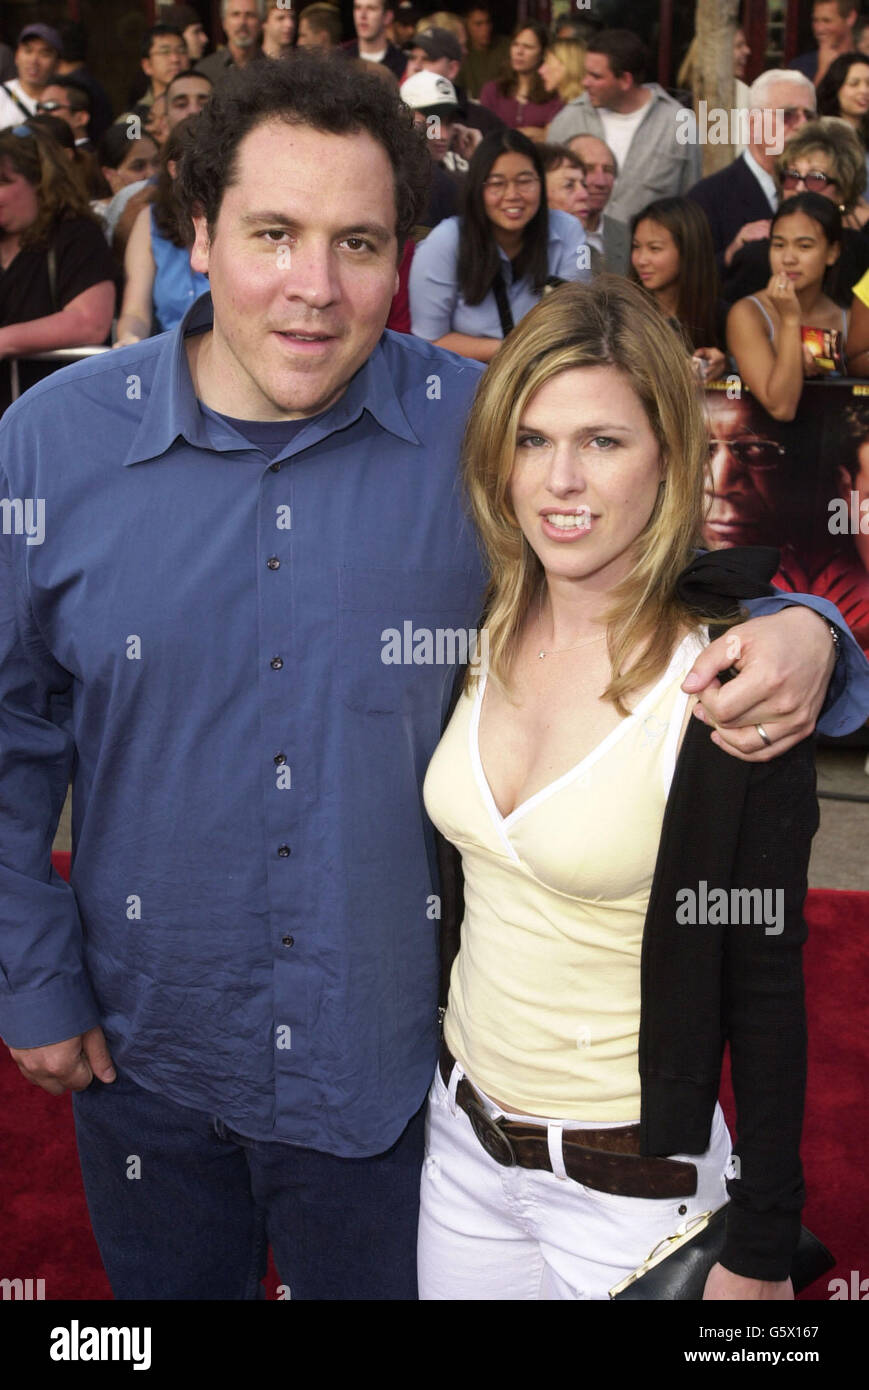 John Favreau kommt mit Frau Joya zur Premiere von The Sum of All Fears in Los Angeles. Stockfoto